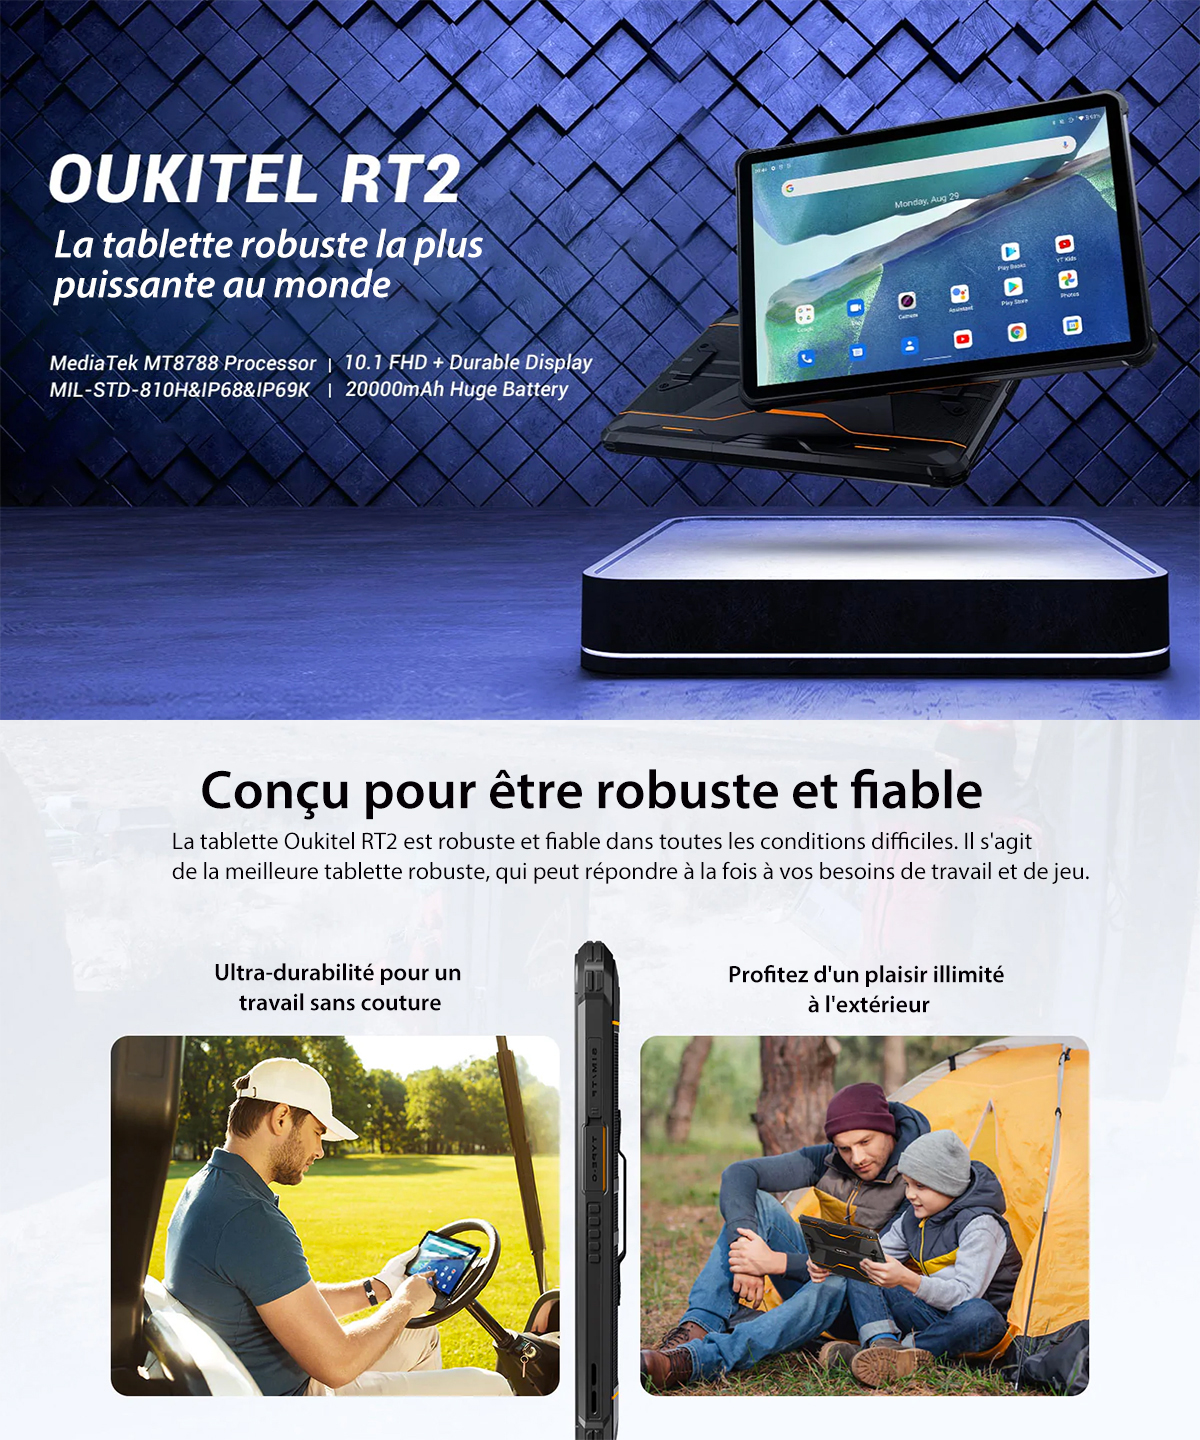 Oukitel RT2 (Tablette tactile robuste et étanche) - Hexagone High-Tech